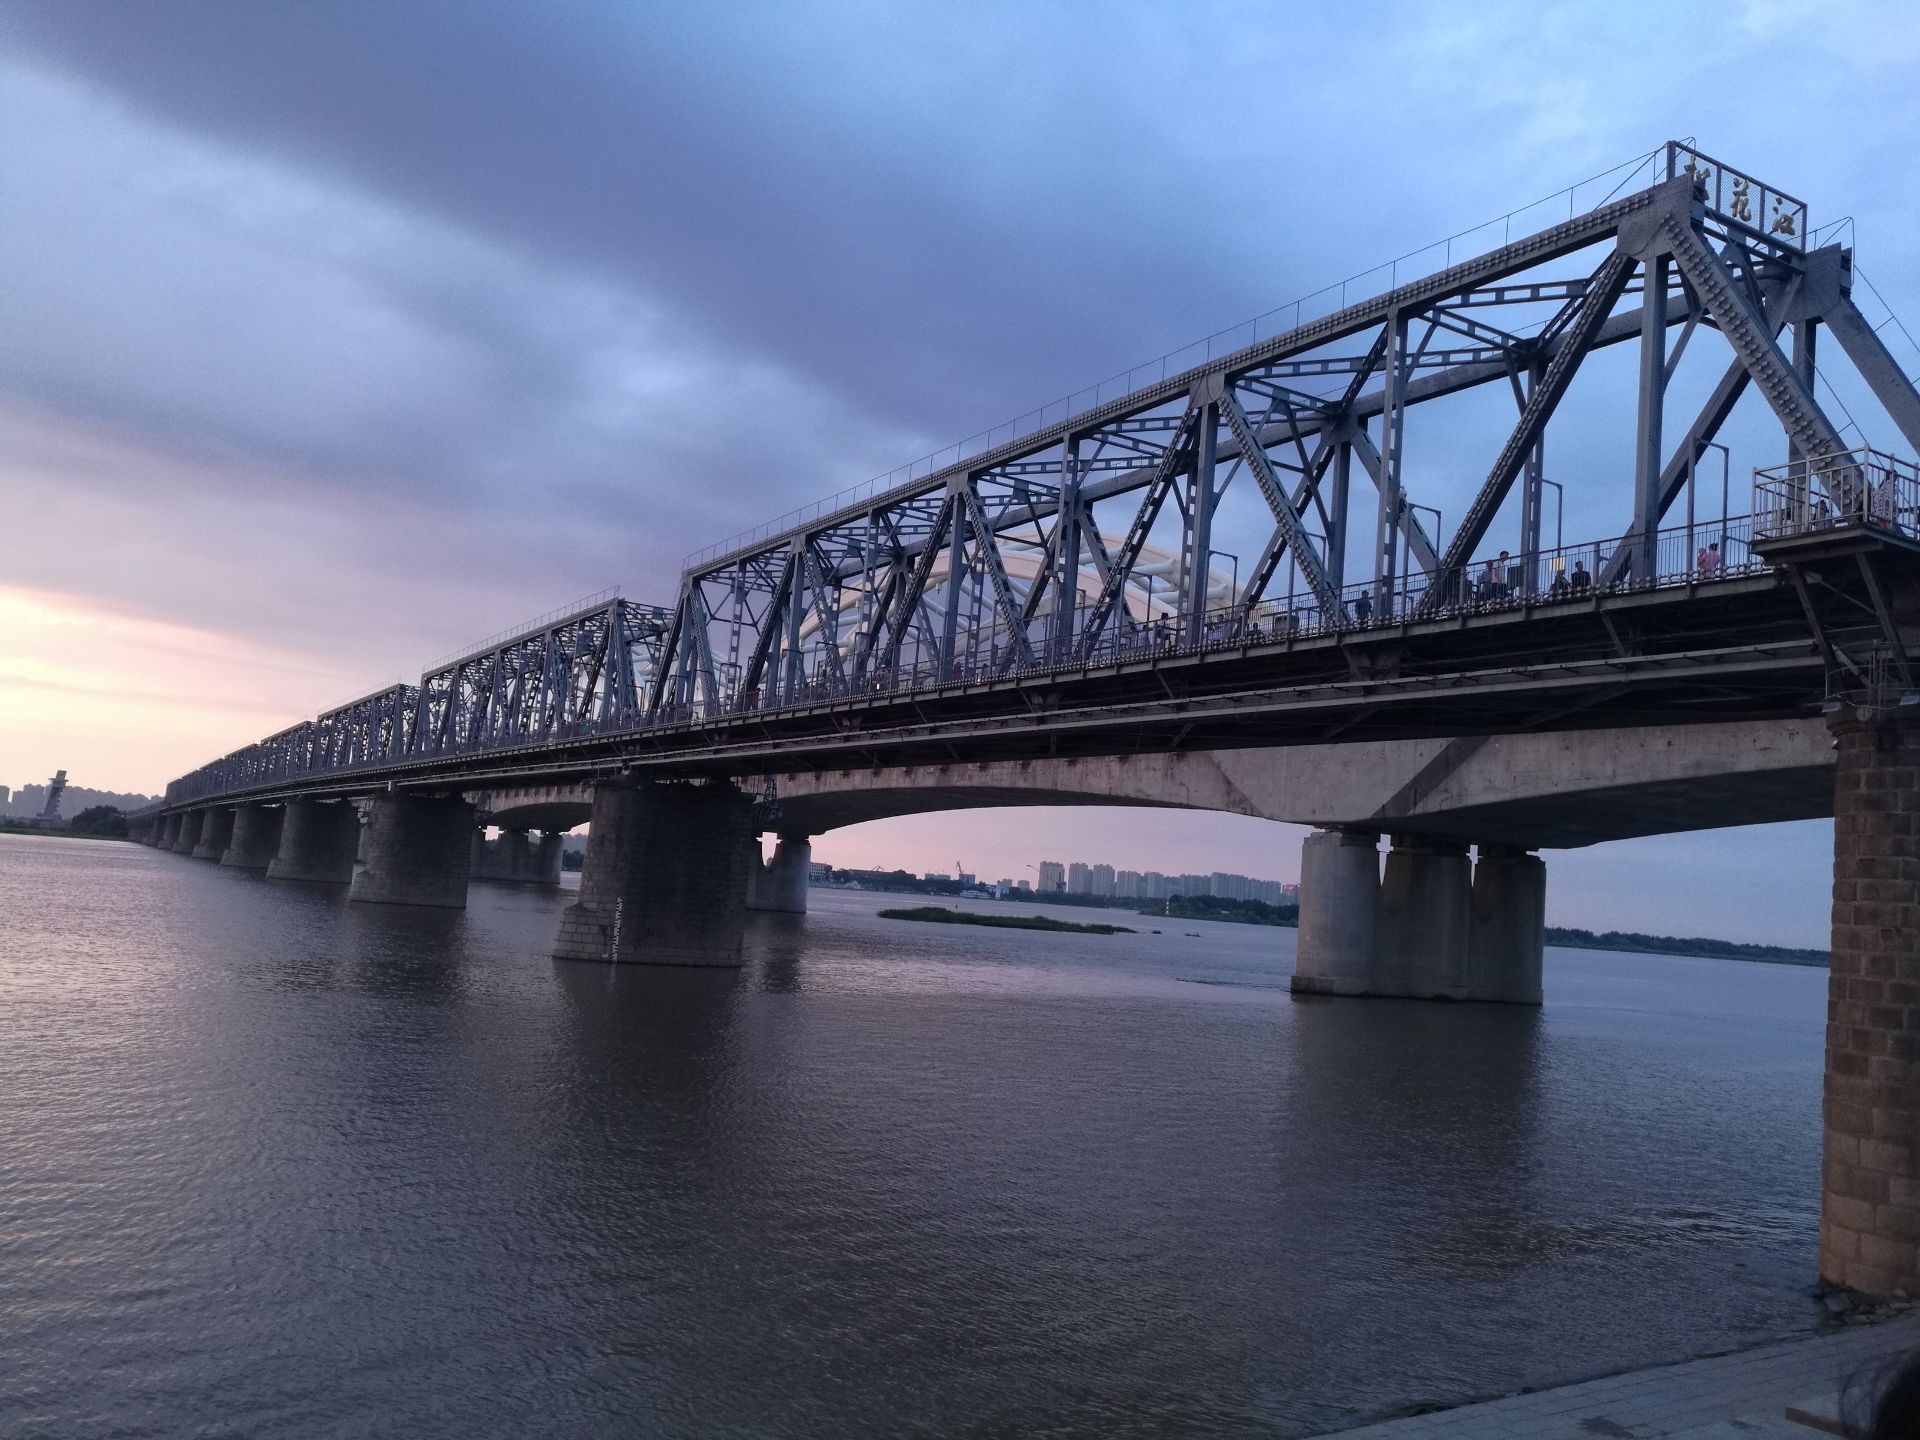 叫滨州铁路哈尔滨松花江大桥,位于黑龙江省哈尔滨市松花江畔斯大林